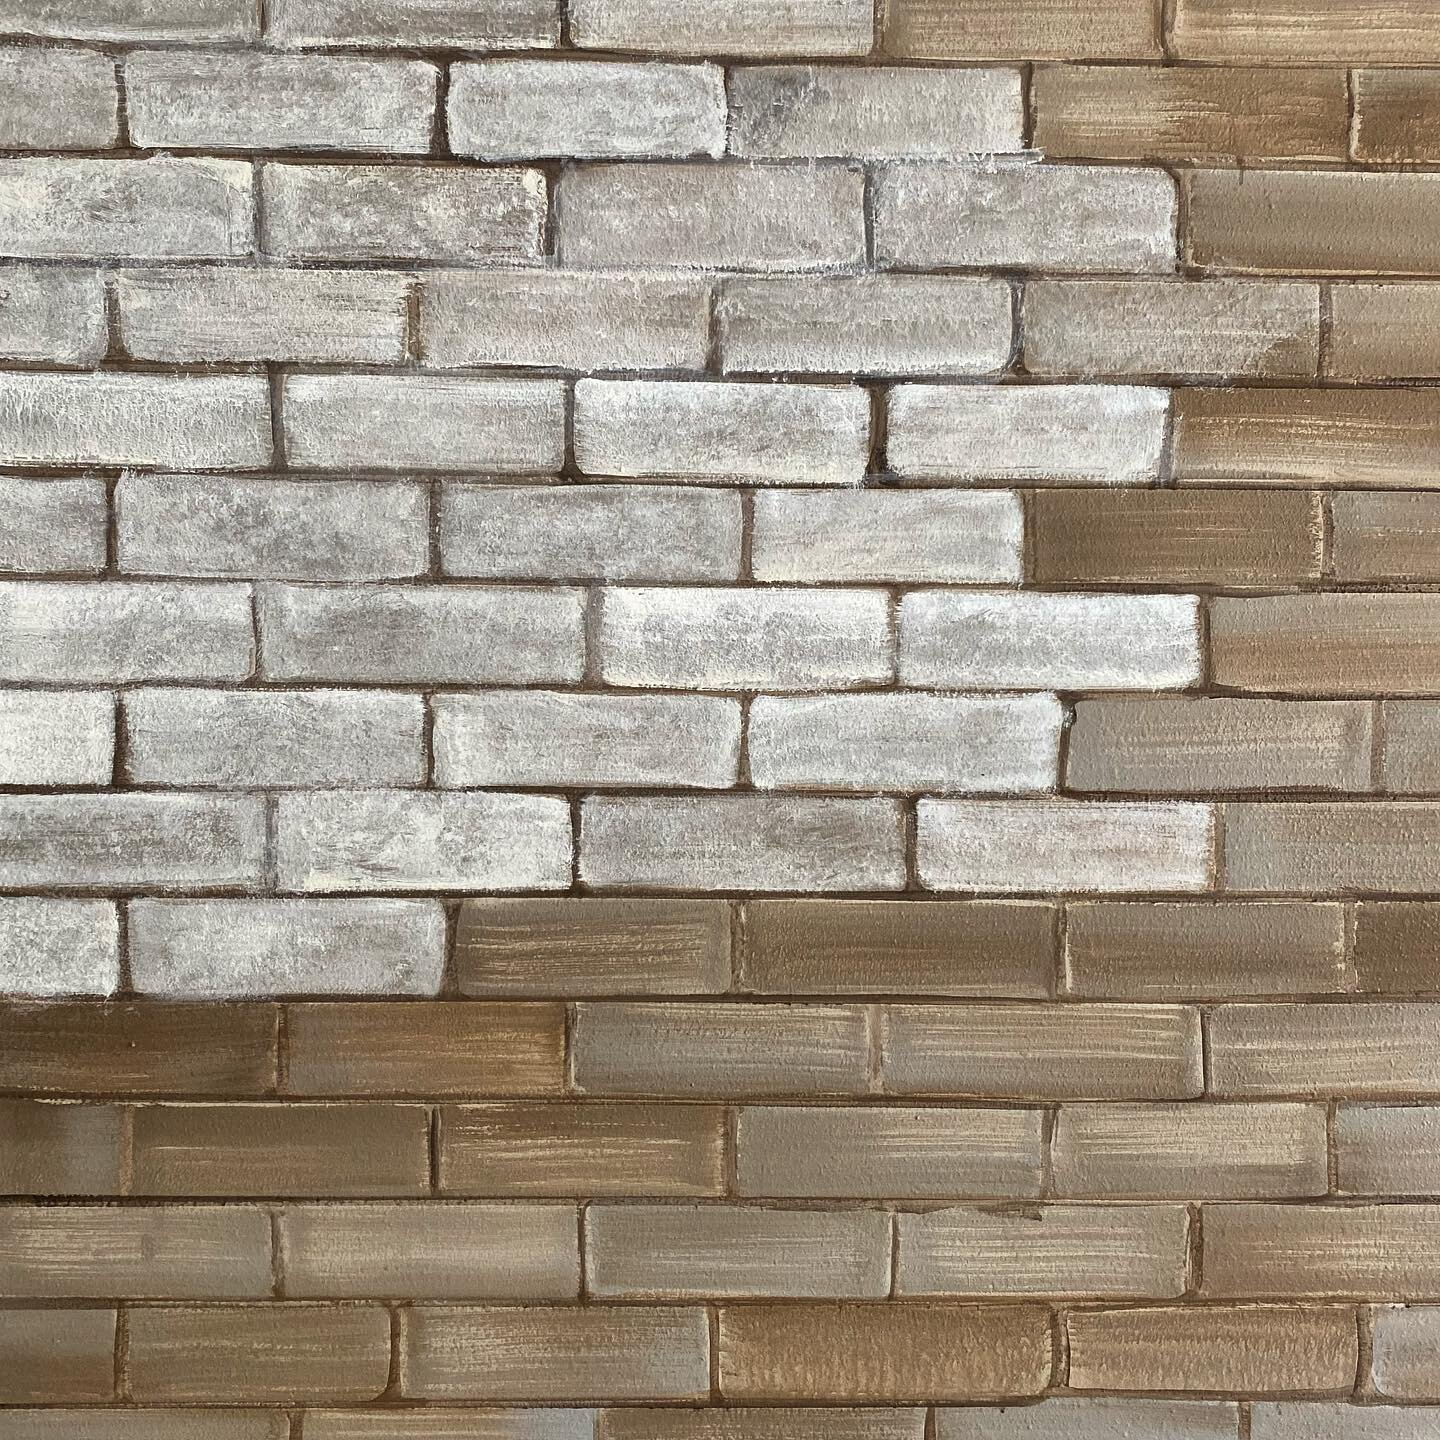 Adding white wash to my faux brick wall! #whitewashed #brickwall #antiquebrick #industrialdesign #whitebrick #fauxbrickwall #accentwall #nursery #nurserydecor